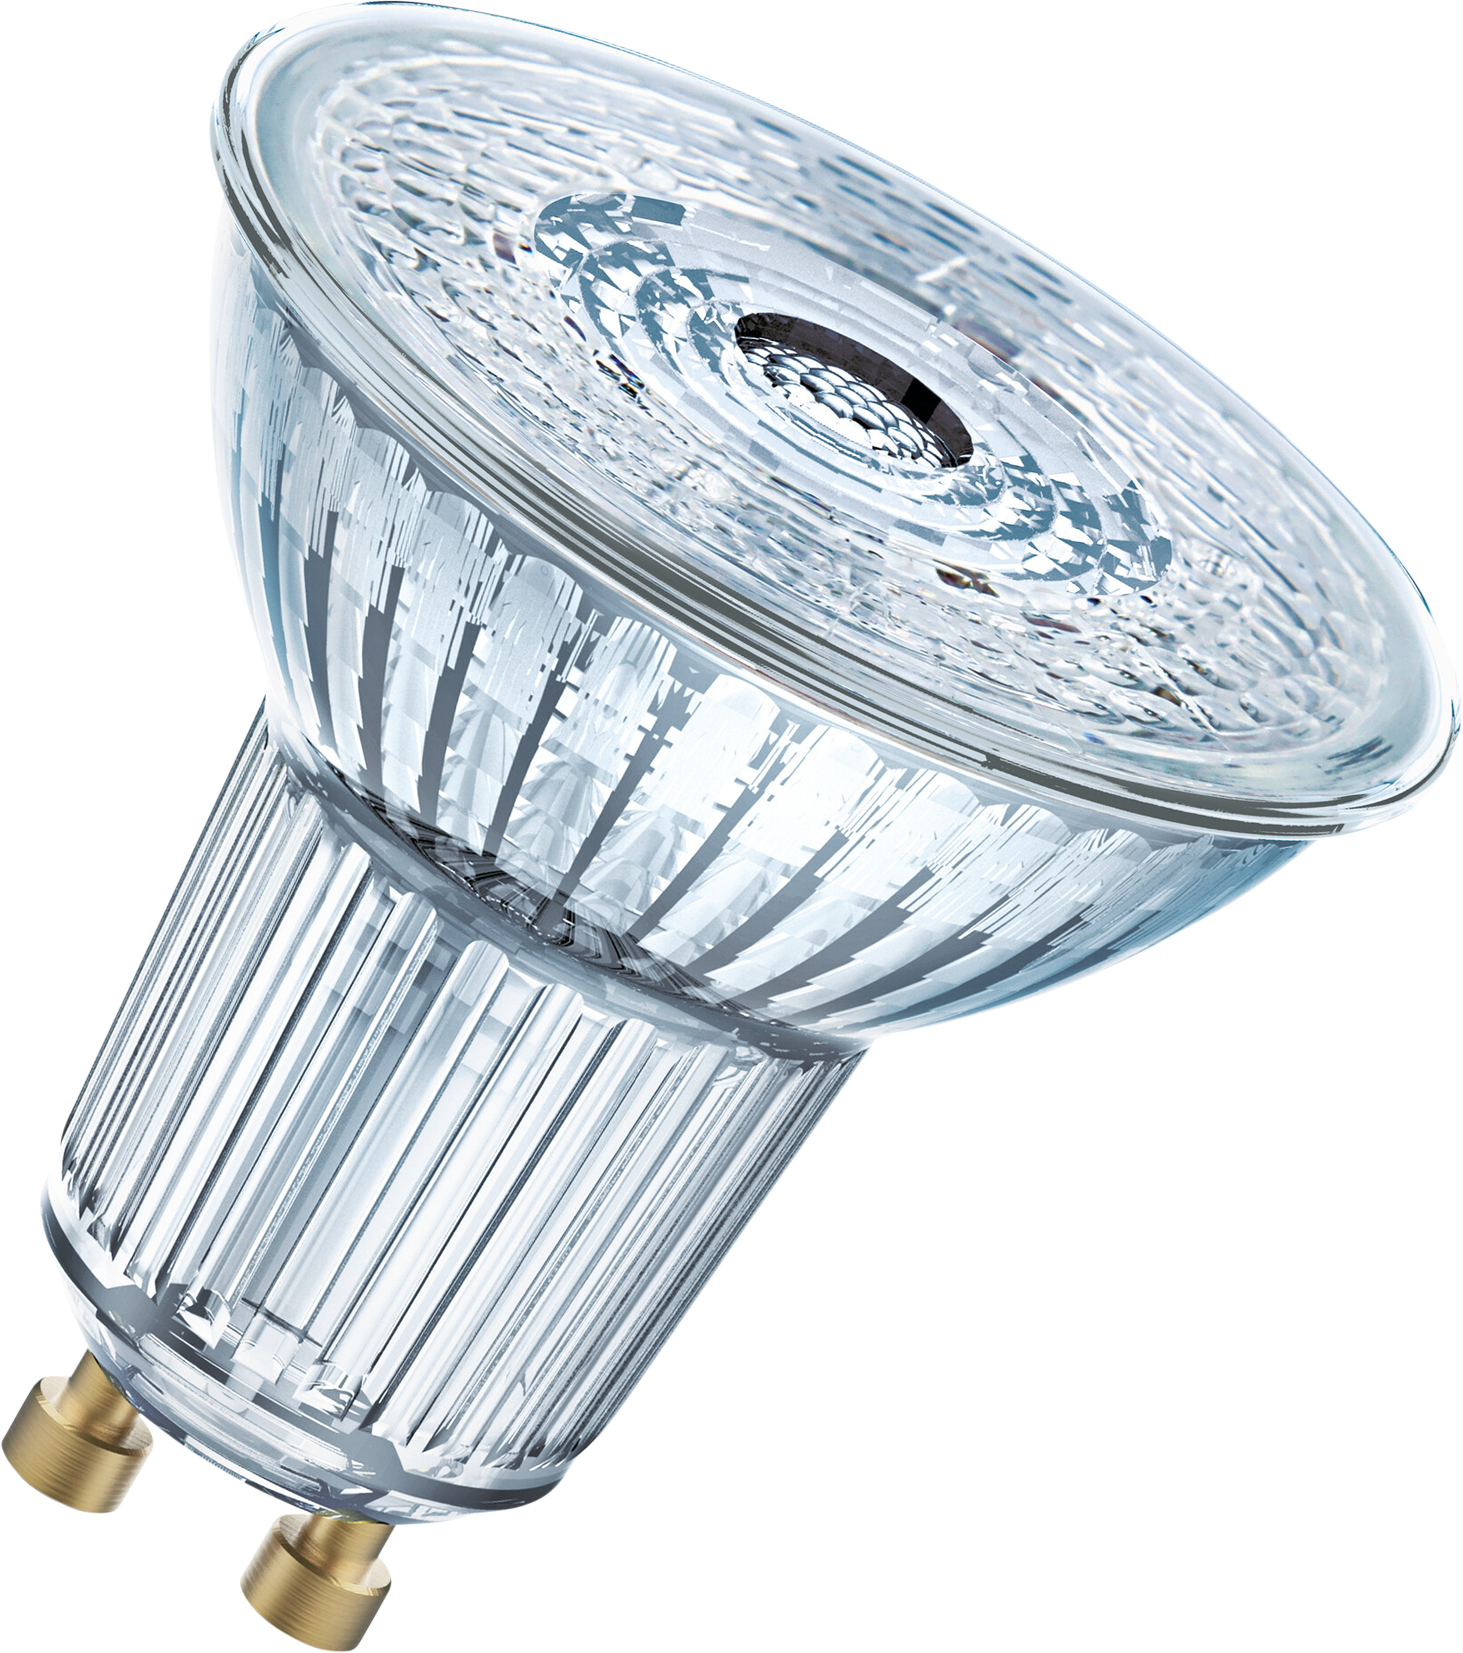 OSRAM LED-Lampe PAR16 GU10, 4.5W, 350lm, dimmbar, warmweiss - Lampen, Leuchten